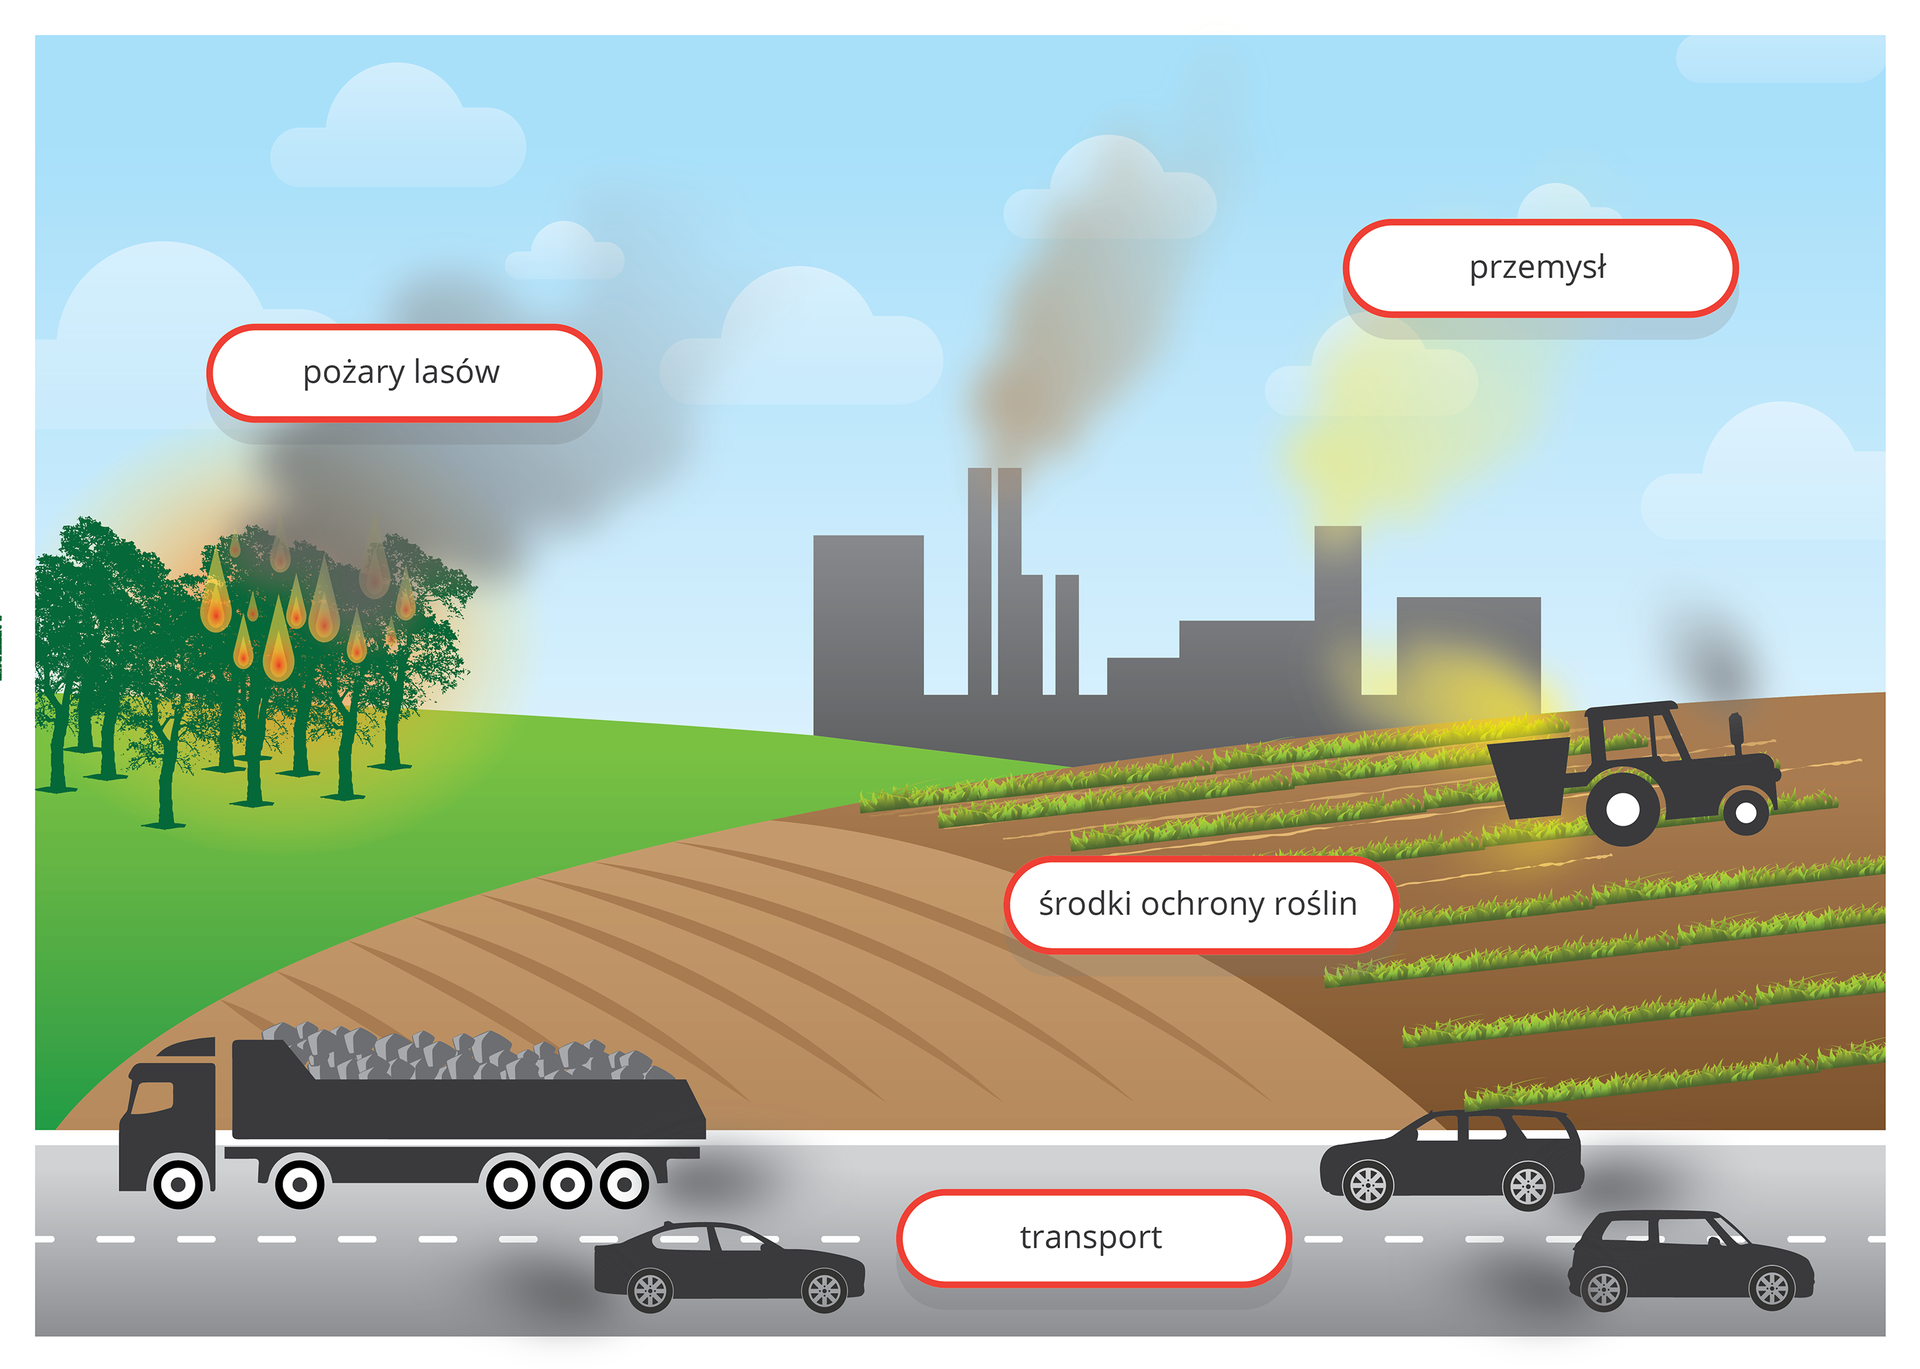 Grafika komputerowa prezentuje widok drogi położonej przy polach uprawnych. Drogą przemieszają się samochody wydalające spaliny. Na polu jadący ciągnik rolniczy rozpyla środki ochrony roślin. Nieopodal pola pali się las. W tle widoczna fabryka emitująca gazy i pyły do atmosfery.